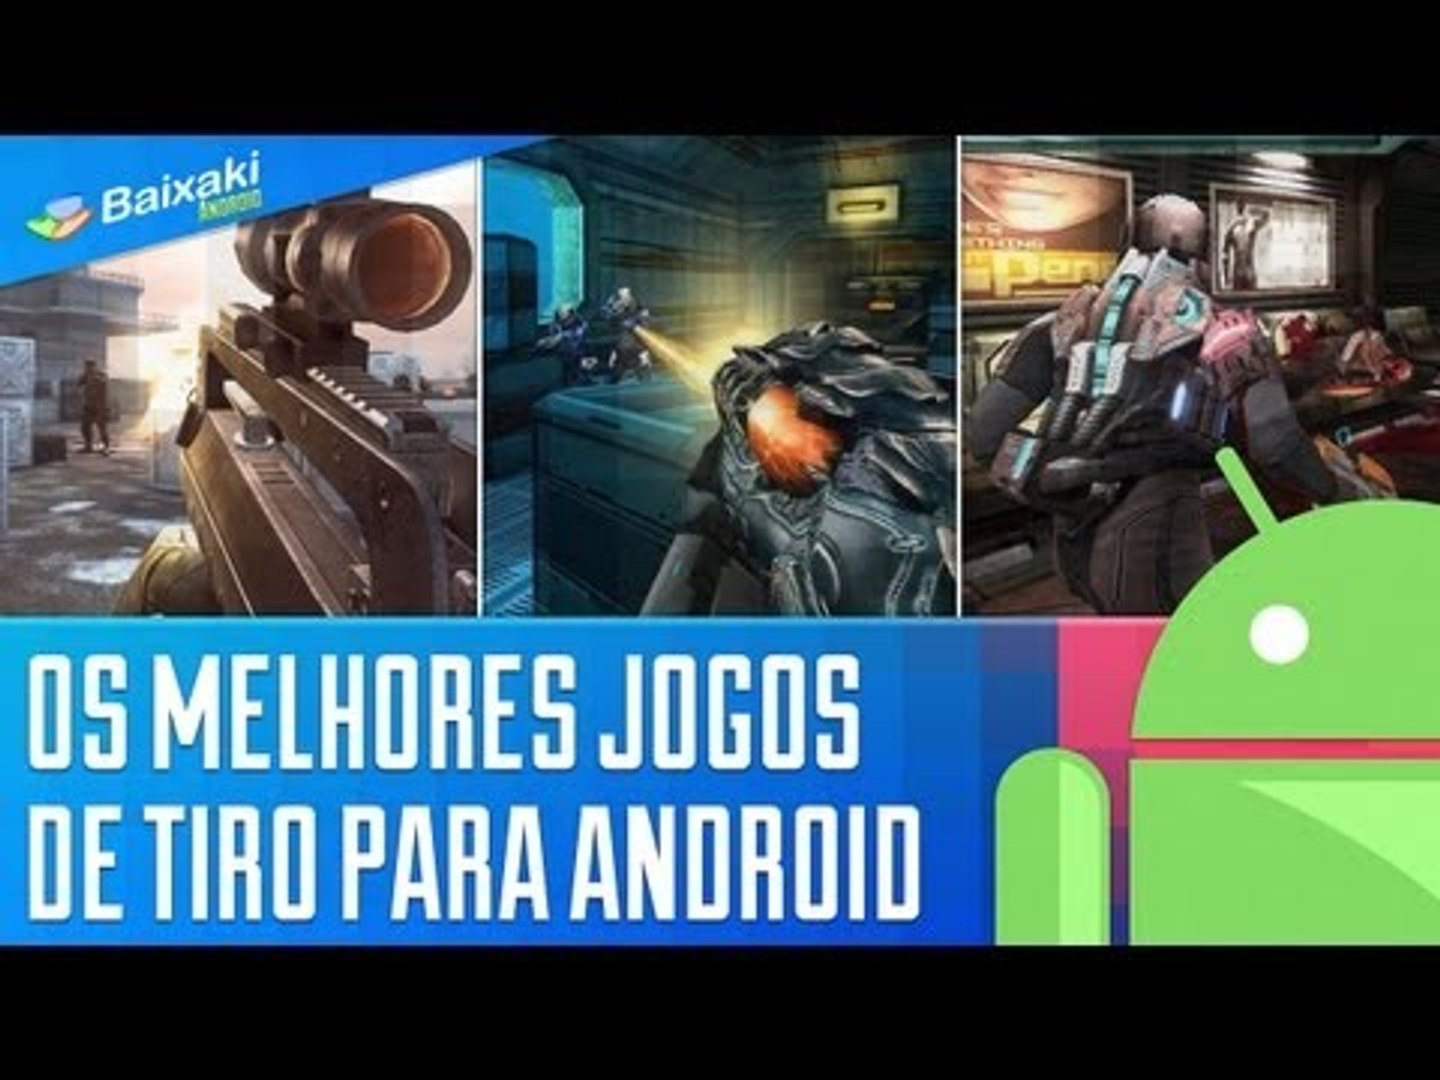 Os melhores jogos de tiro para Android [Dicas] - Baixaki - video Dailymotion